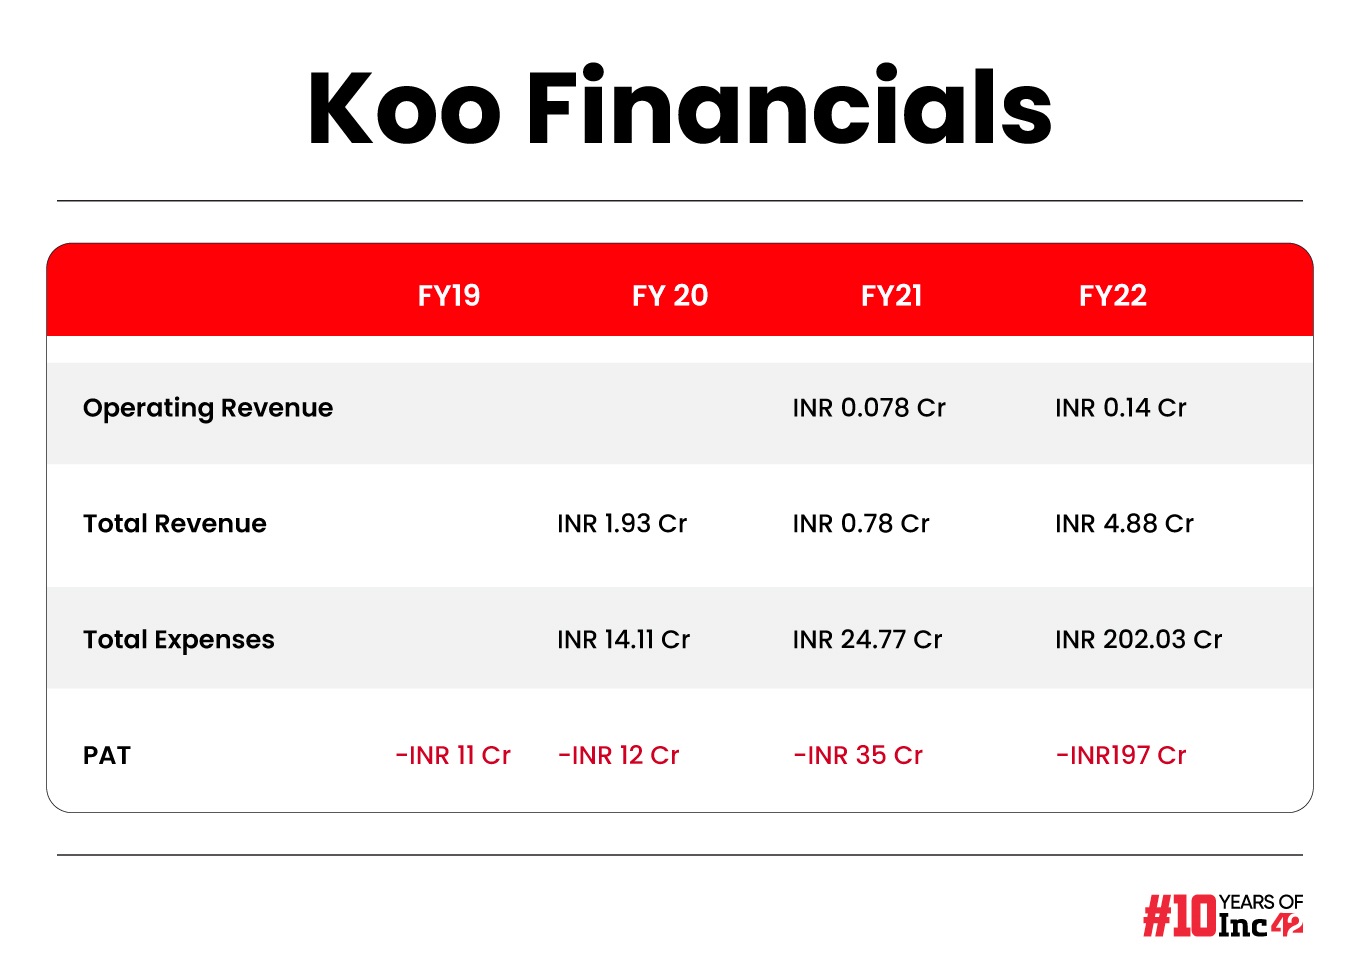 Koo Financials